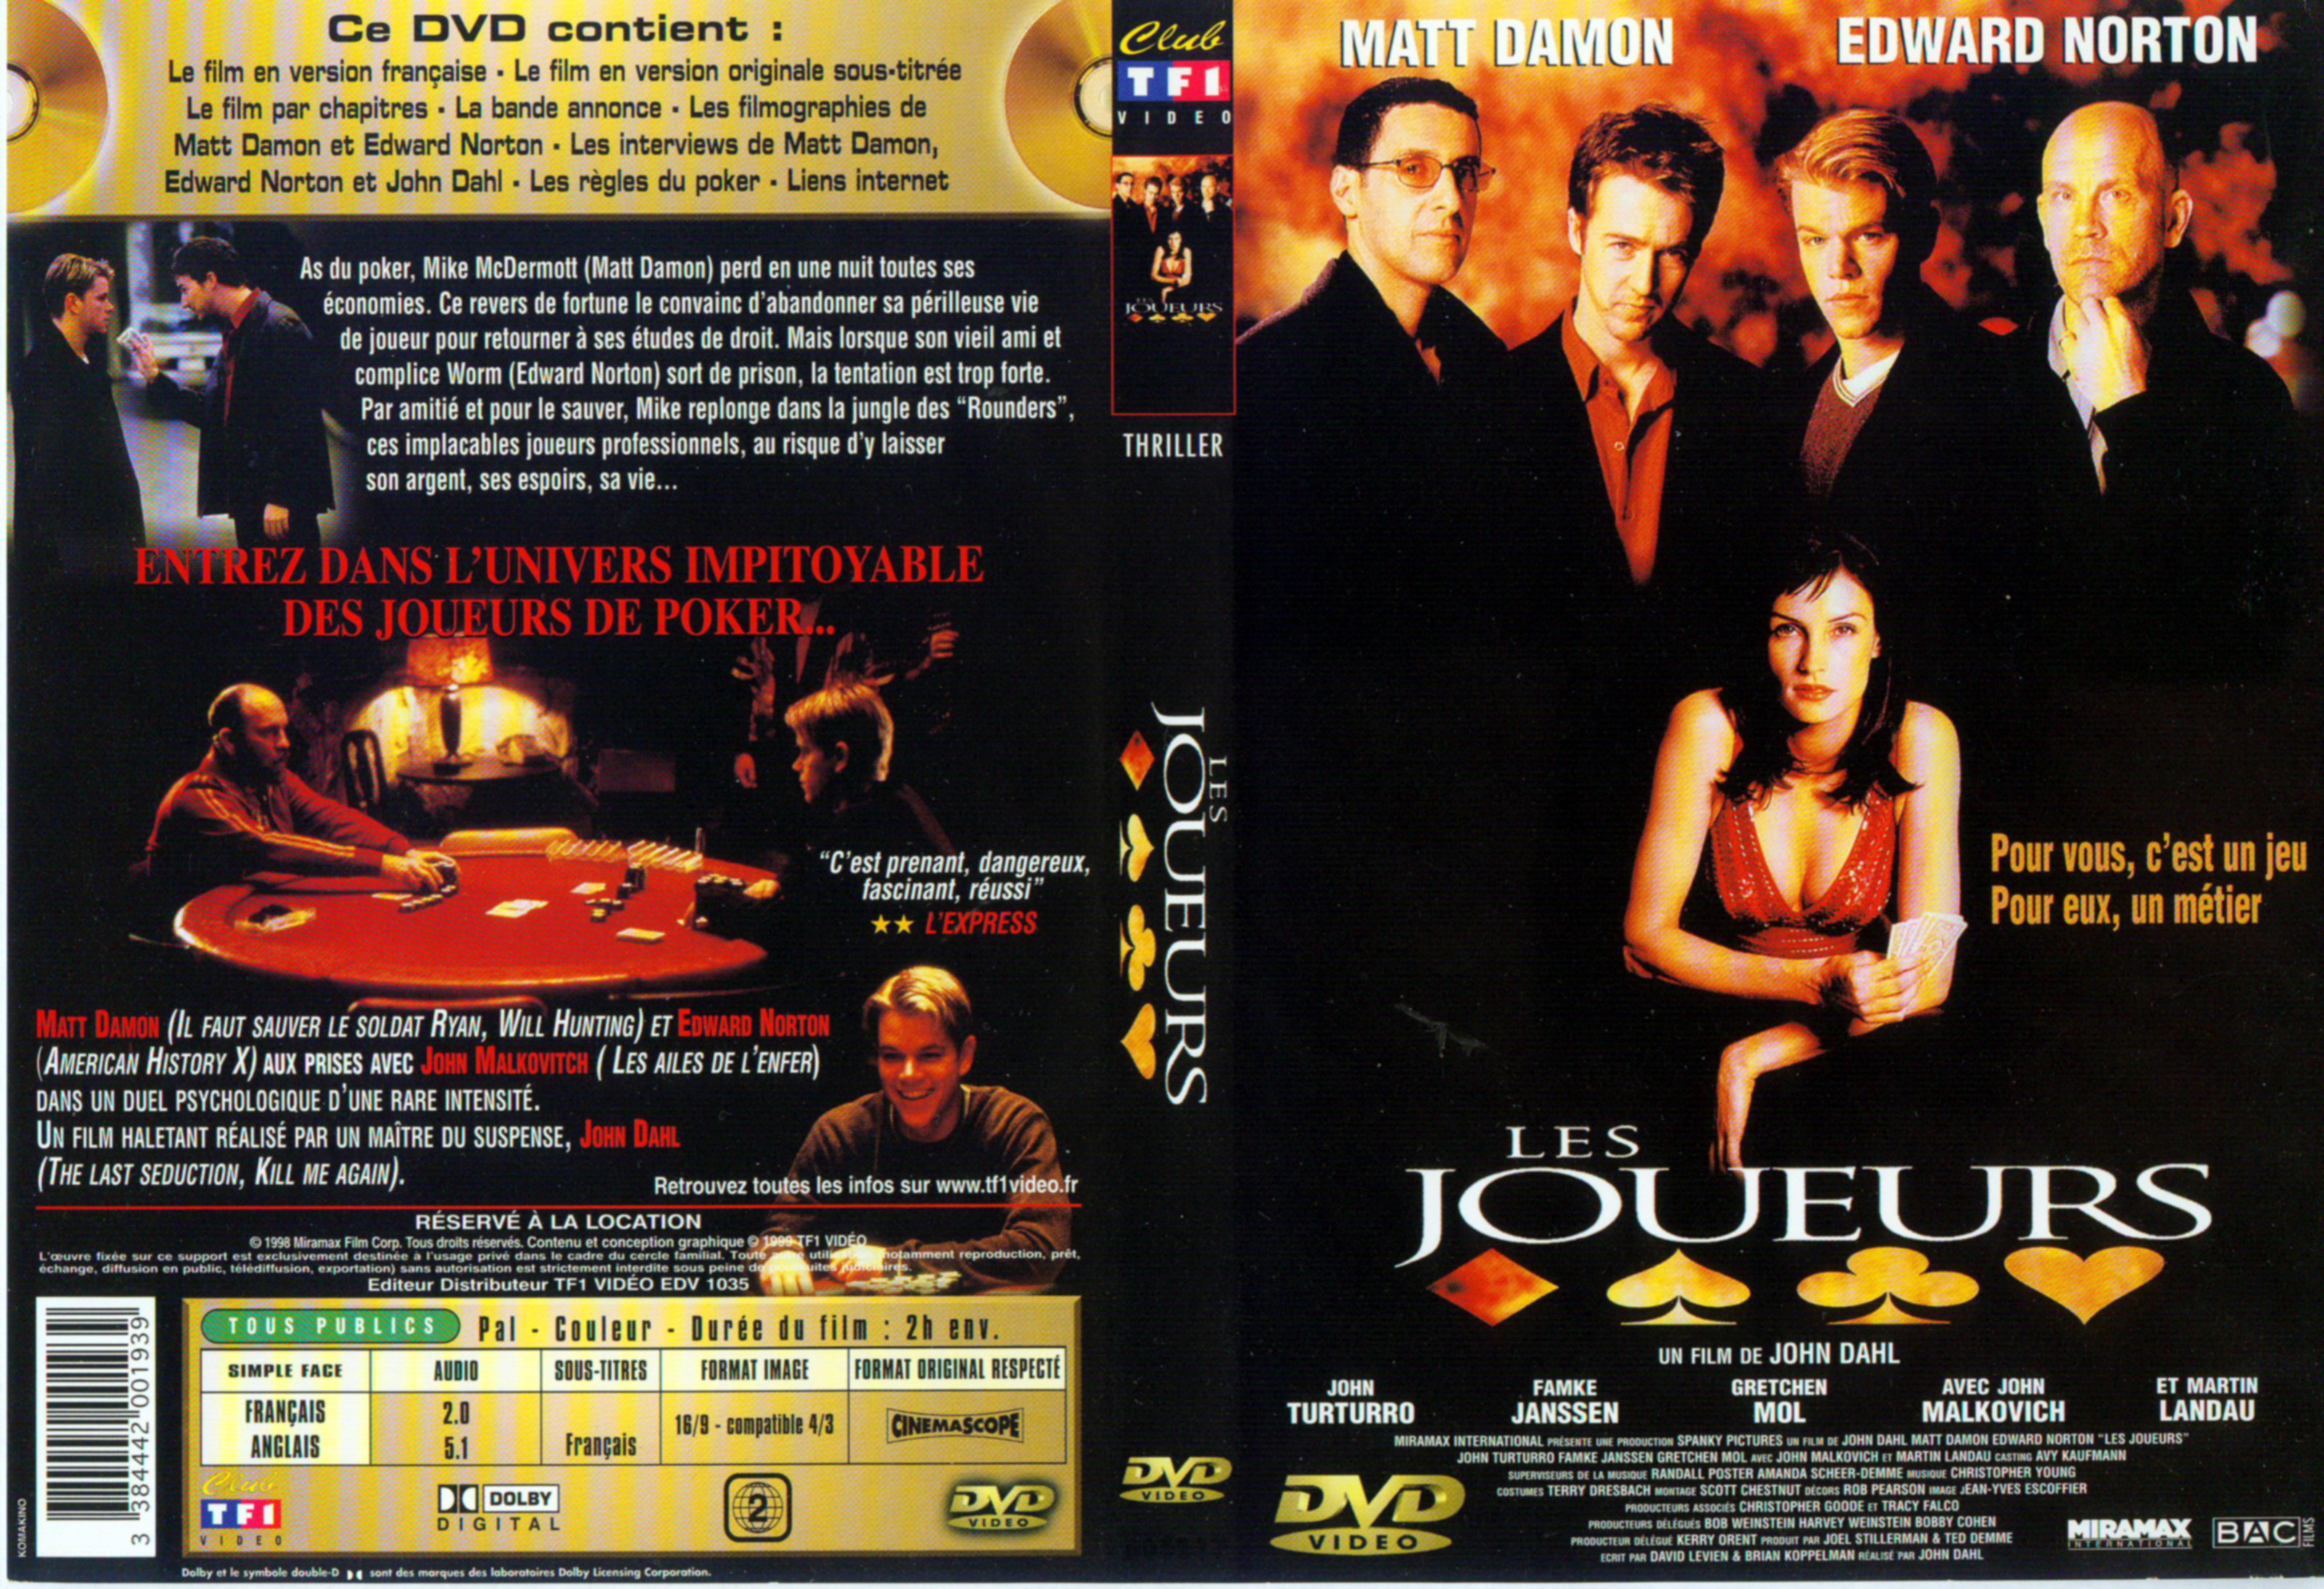 Jaquette DVD Les  joueurs v2